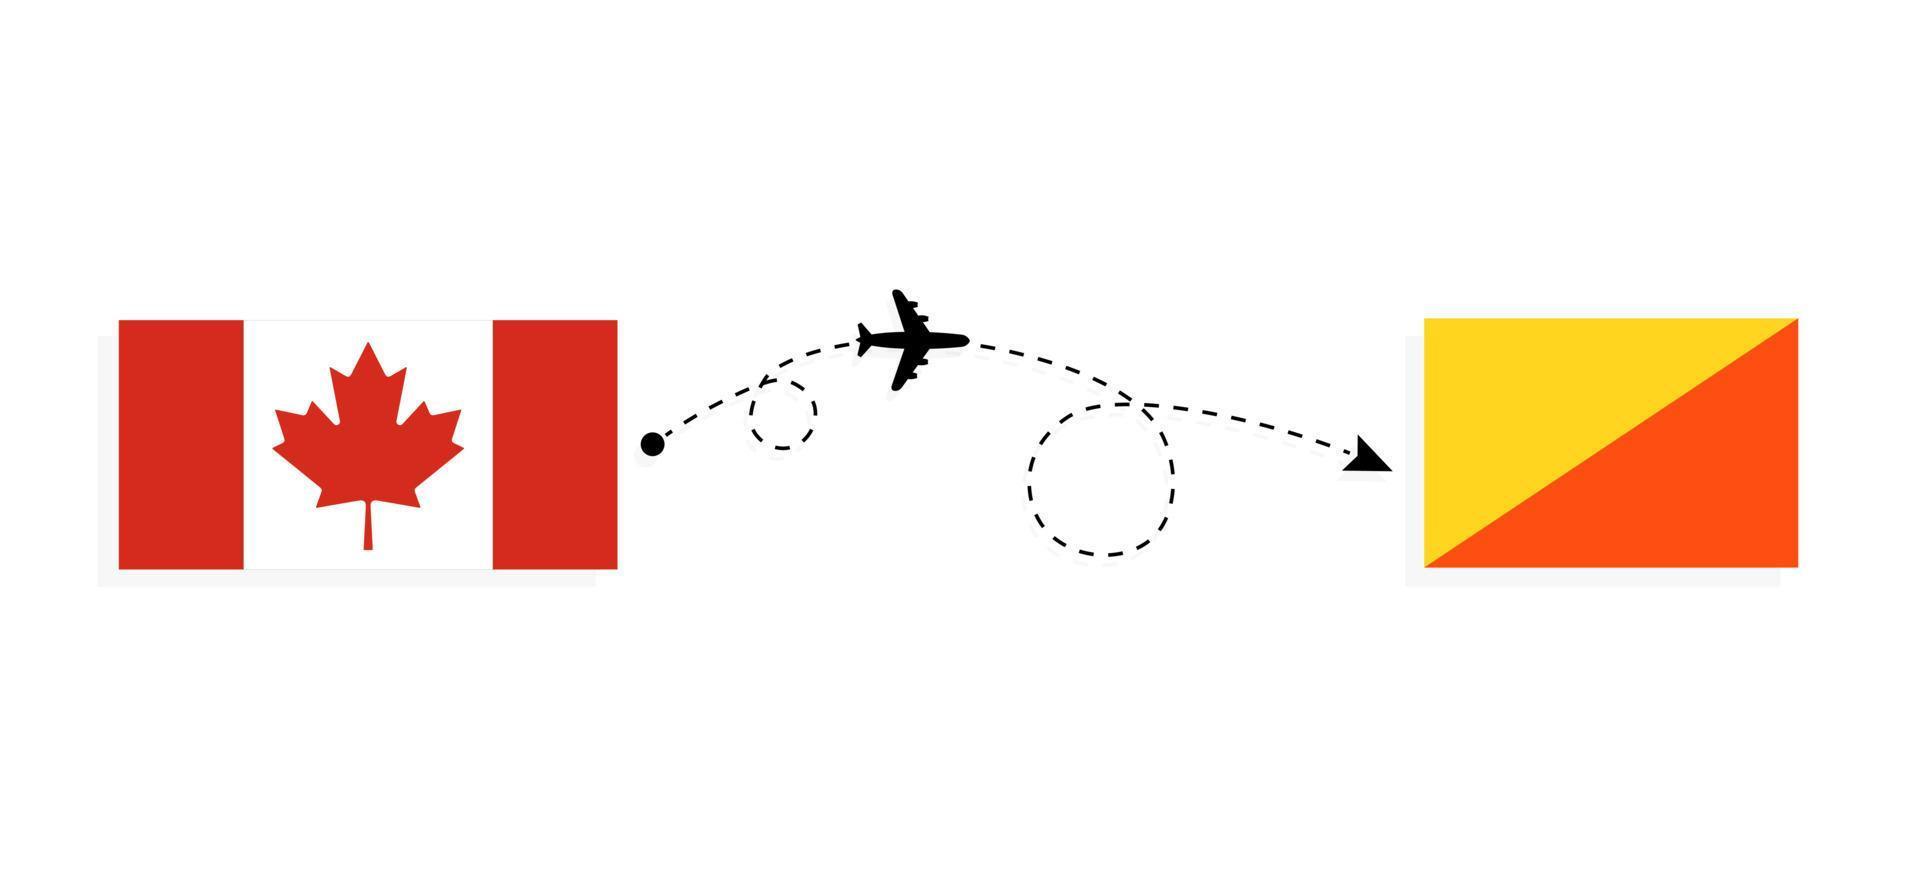 vuelo y viaje desde canadá a bután en avión de pasajeros concepto de viaje vector